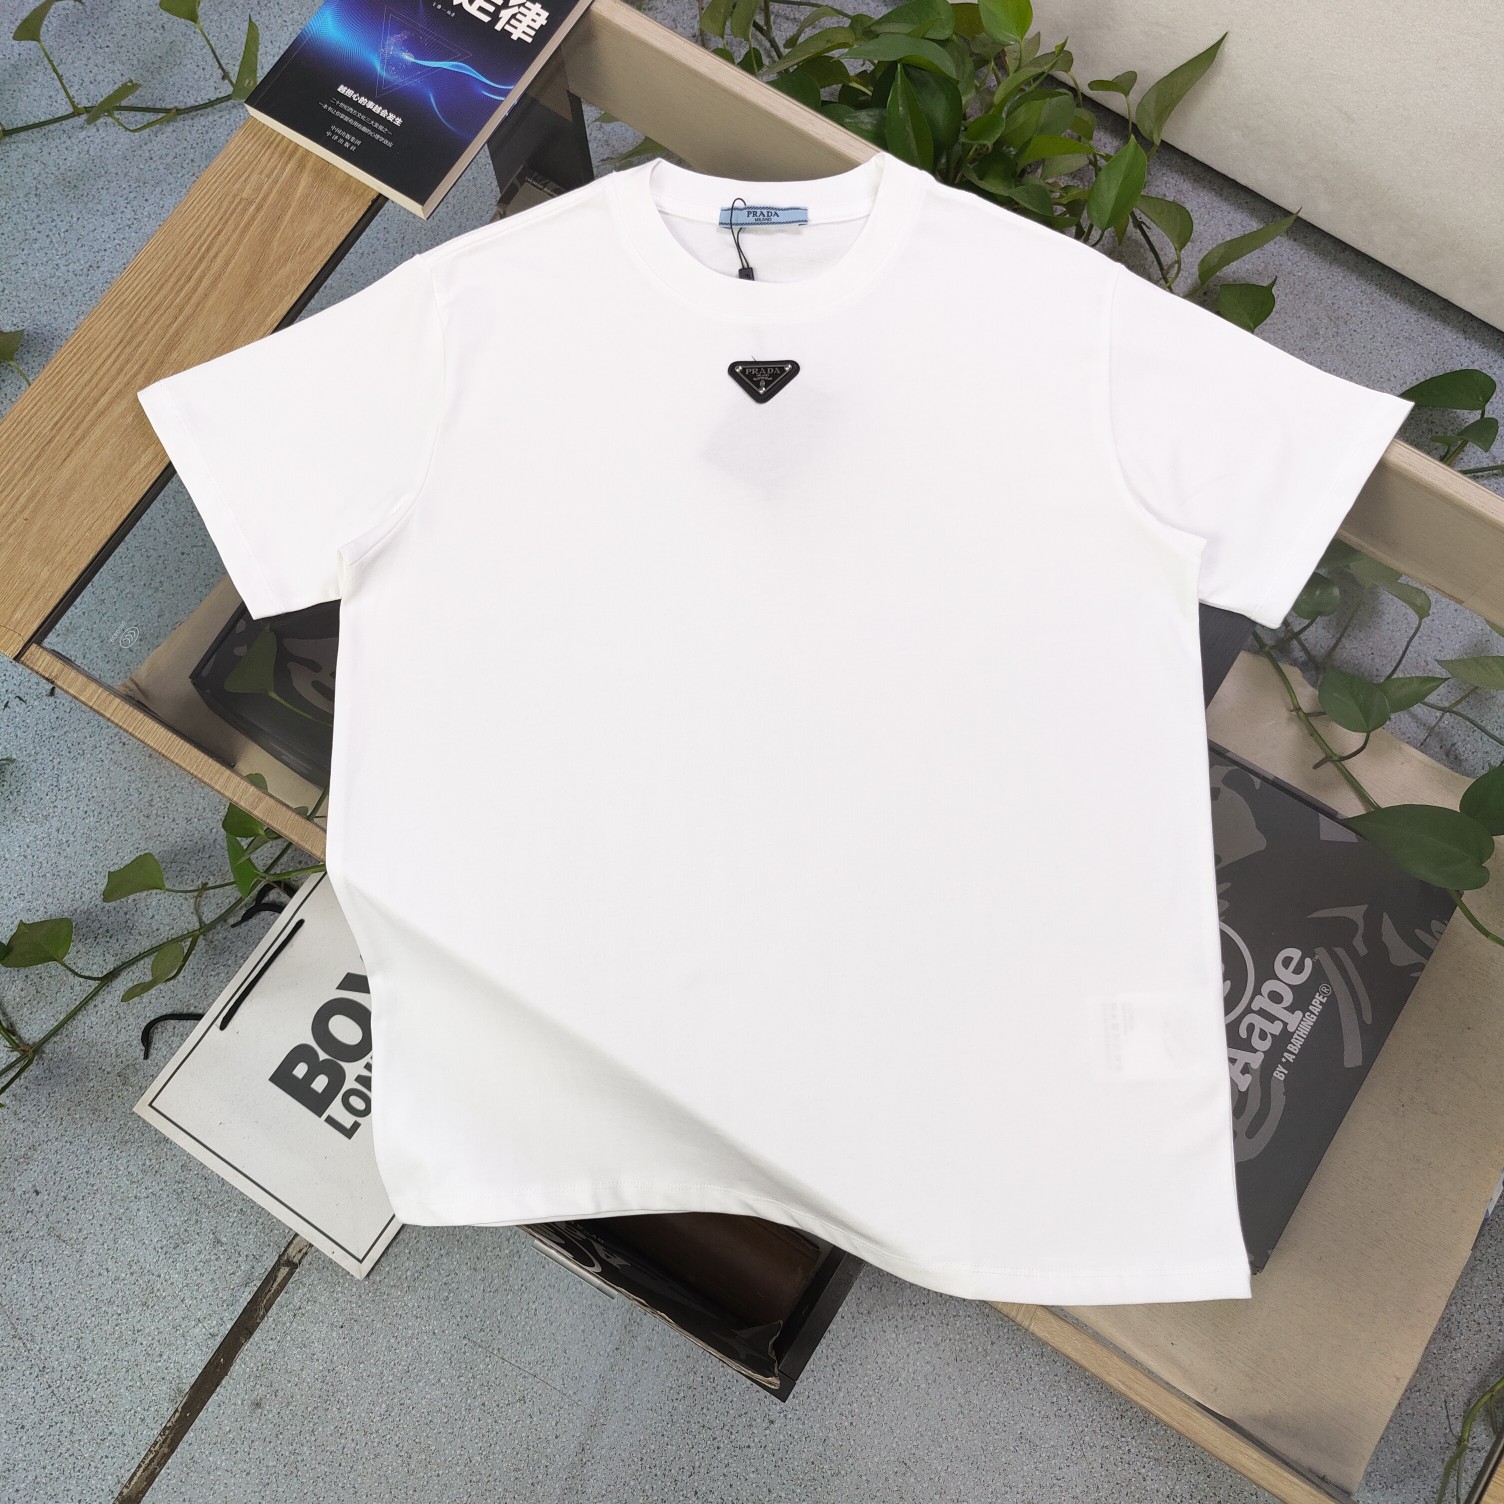 Prada Clothing T-Shirt Black White Unisex Cotton Short Sleeve